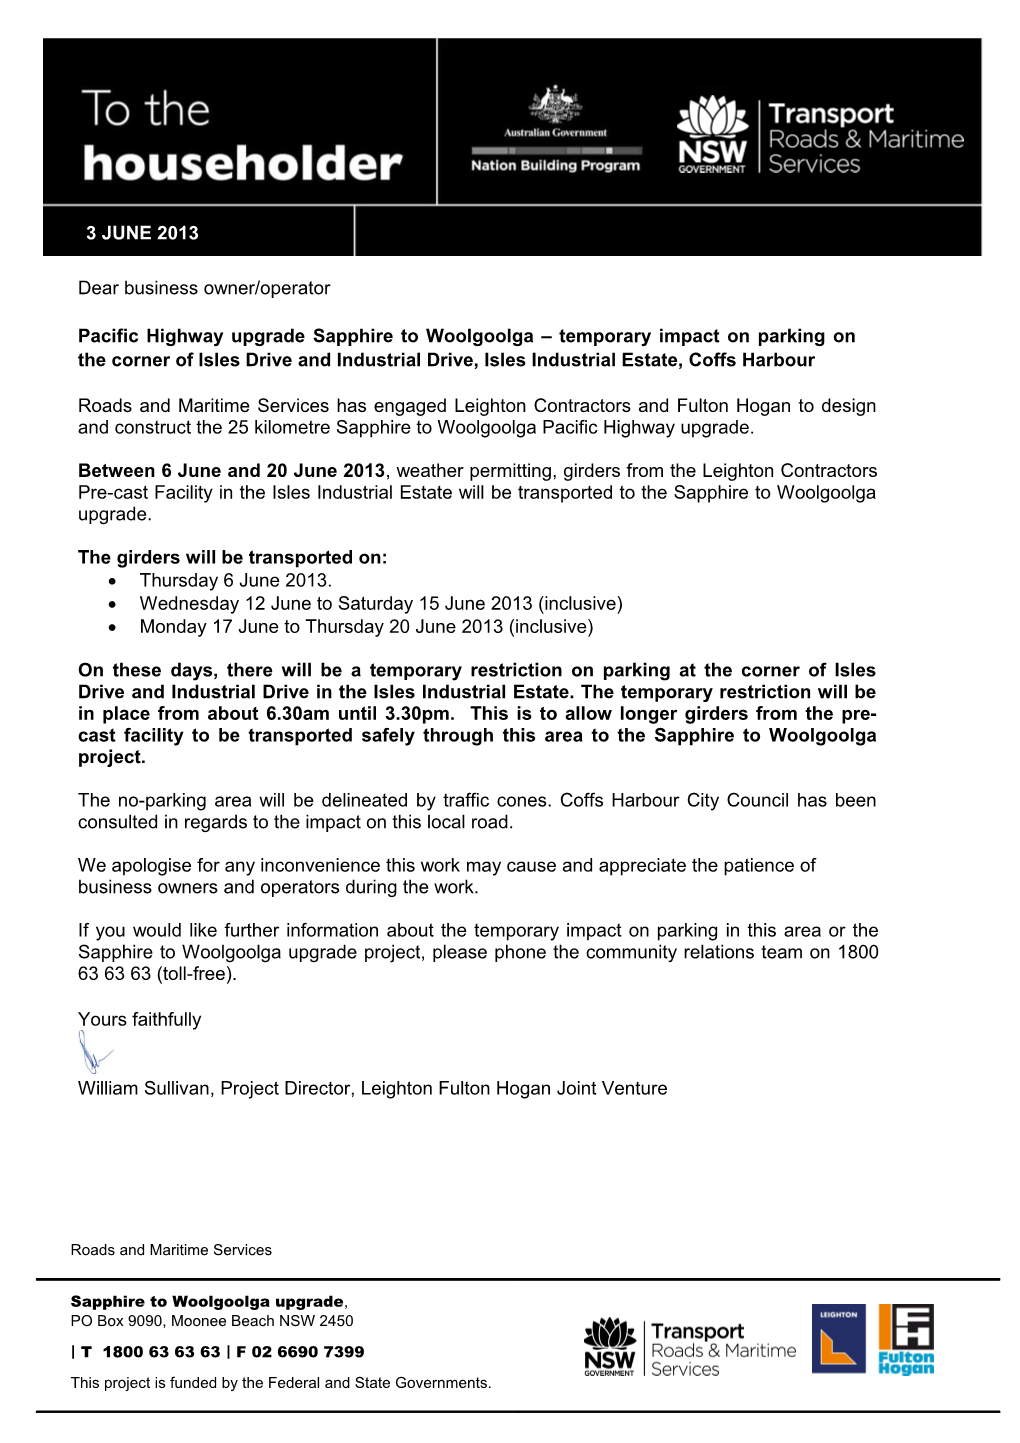 Letter to the Householder - 3 June 2013